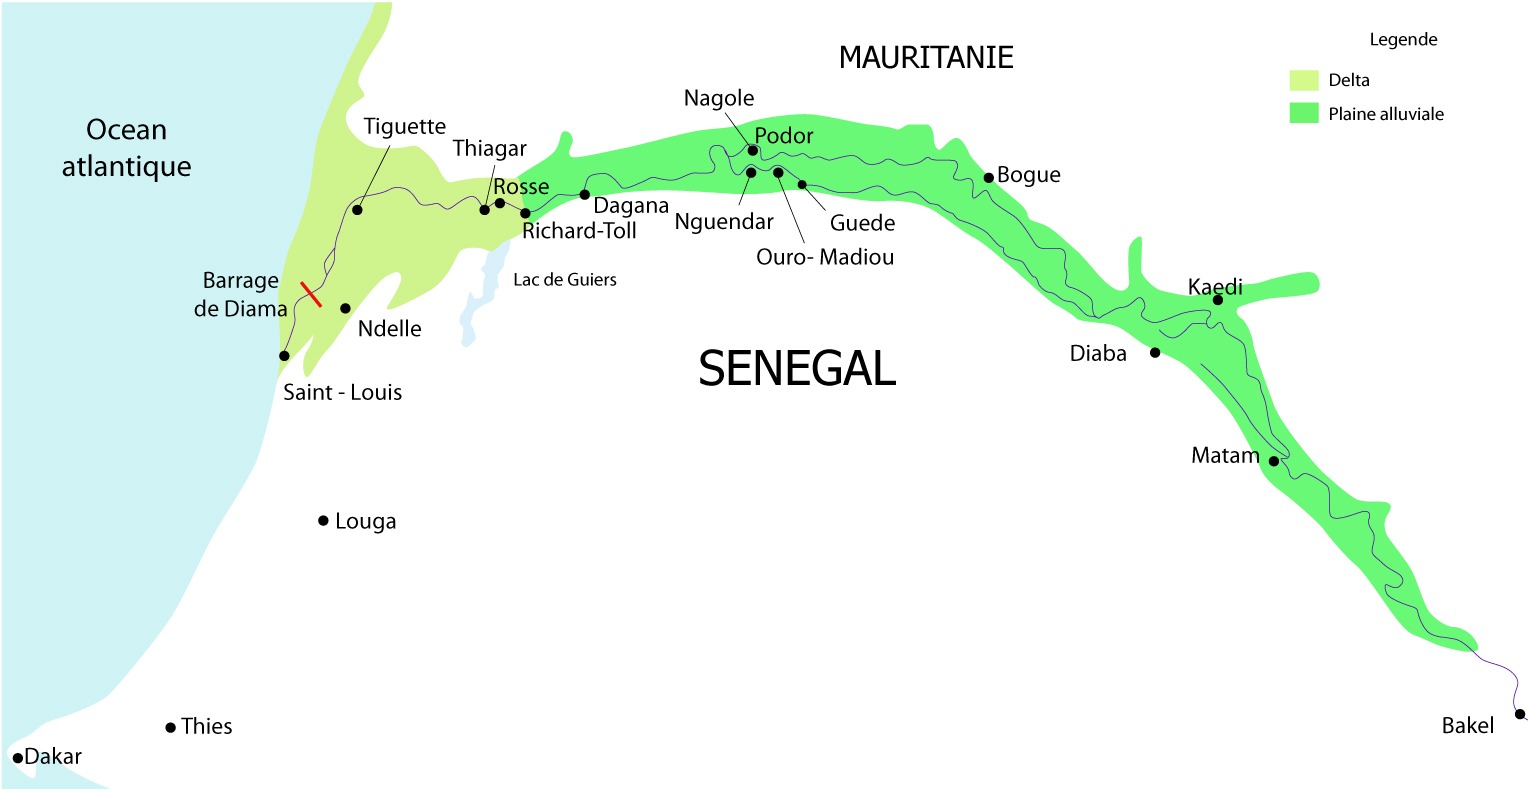 Sep Voyage vous propose un voyage sur le fleuve qui traverse le Sénégal de bout en bout.